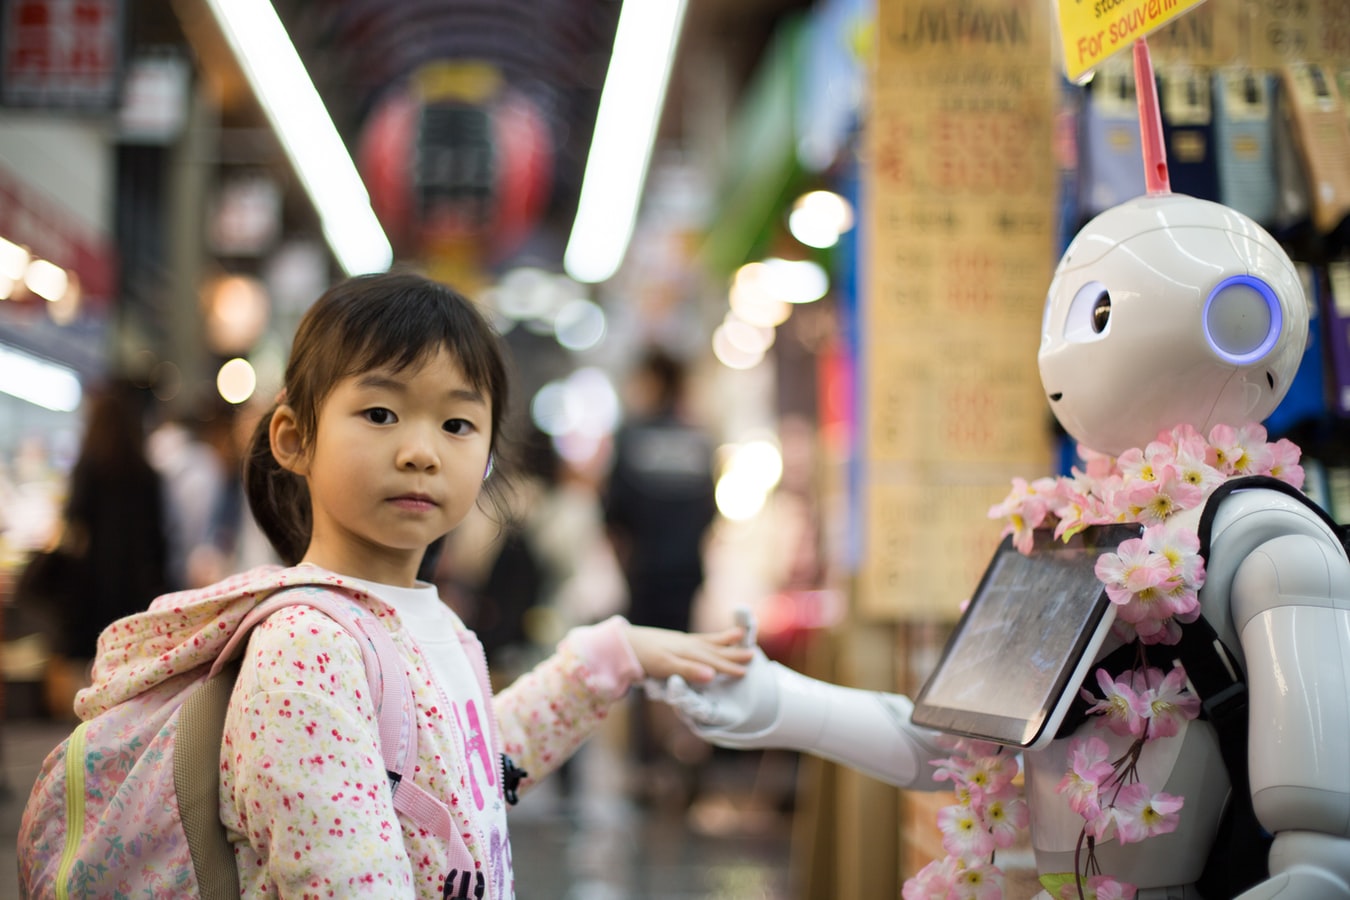 A diferencia de países como Japón, en las sociedades occidentales existe temor de que los robots reemplacen a los humanos. (Foto Prensa Libre: Unsplash)